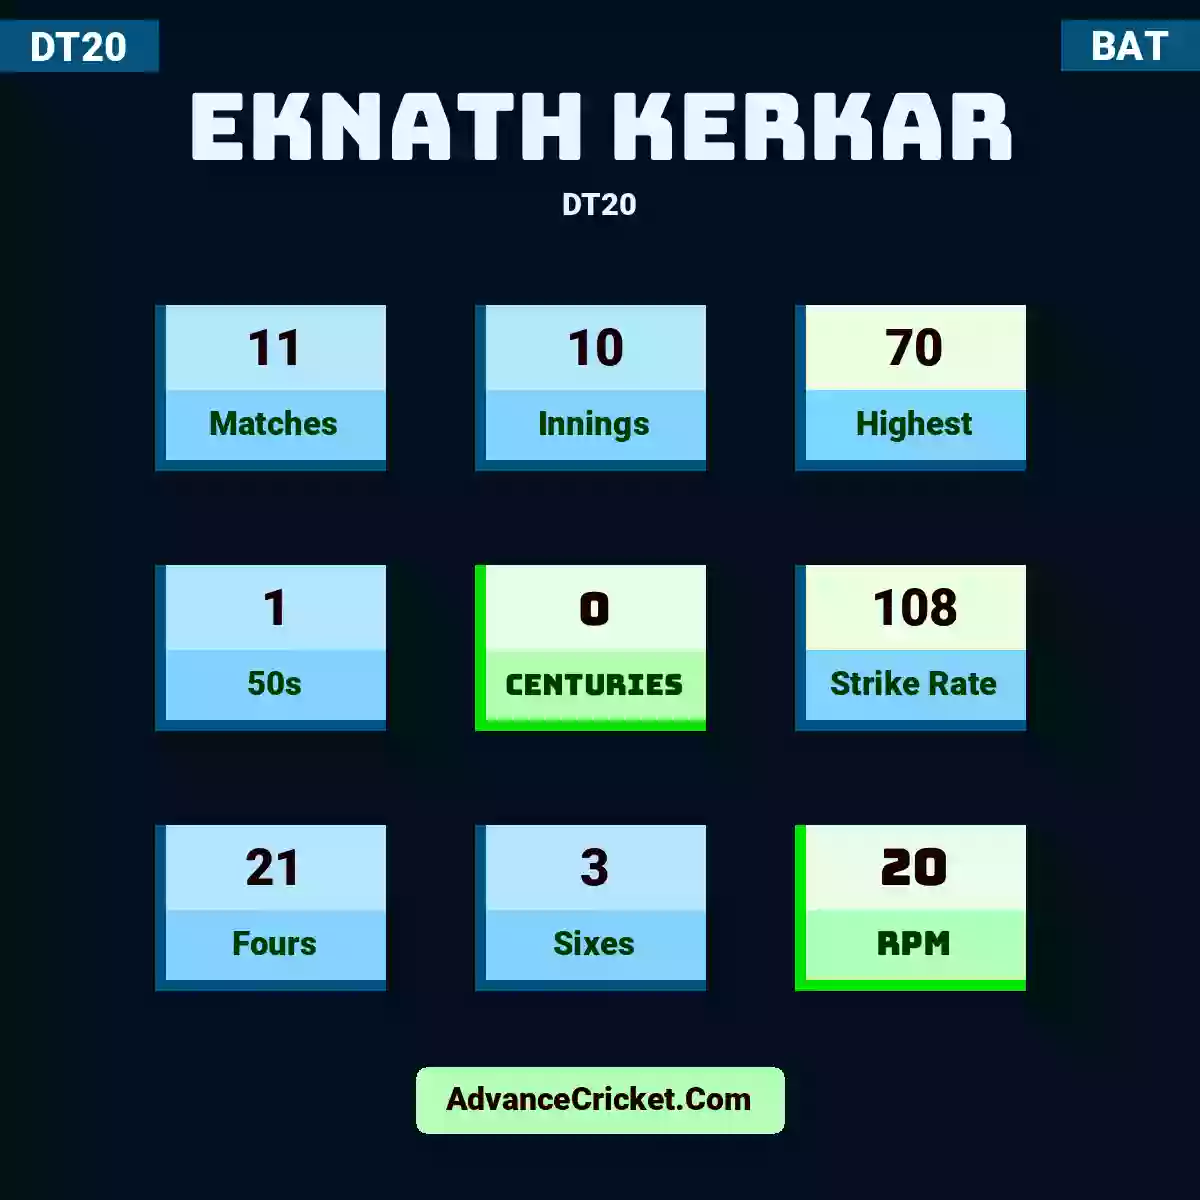 Eknath Kerkar DT20 , Eknath Kerkar played 11 matches, scored 70 runs as highest, 1 half-centuries, and 0 centuries, with a strike rate of 108. E.Kerkar hit 21 fours and 3 sixes, with an RPM of 20.